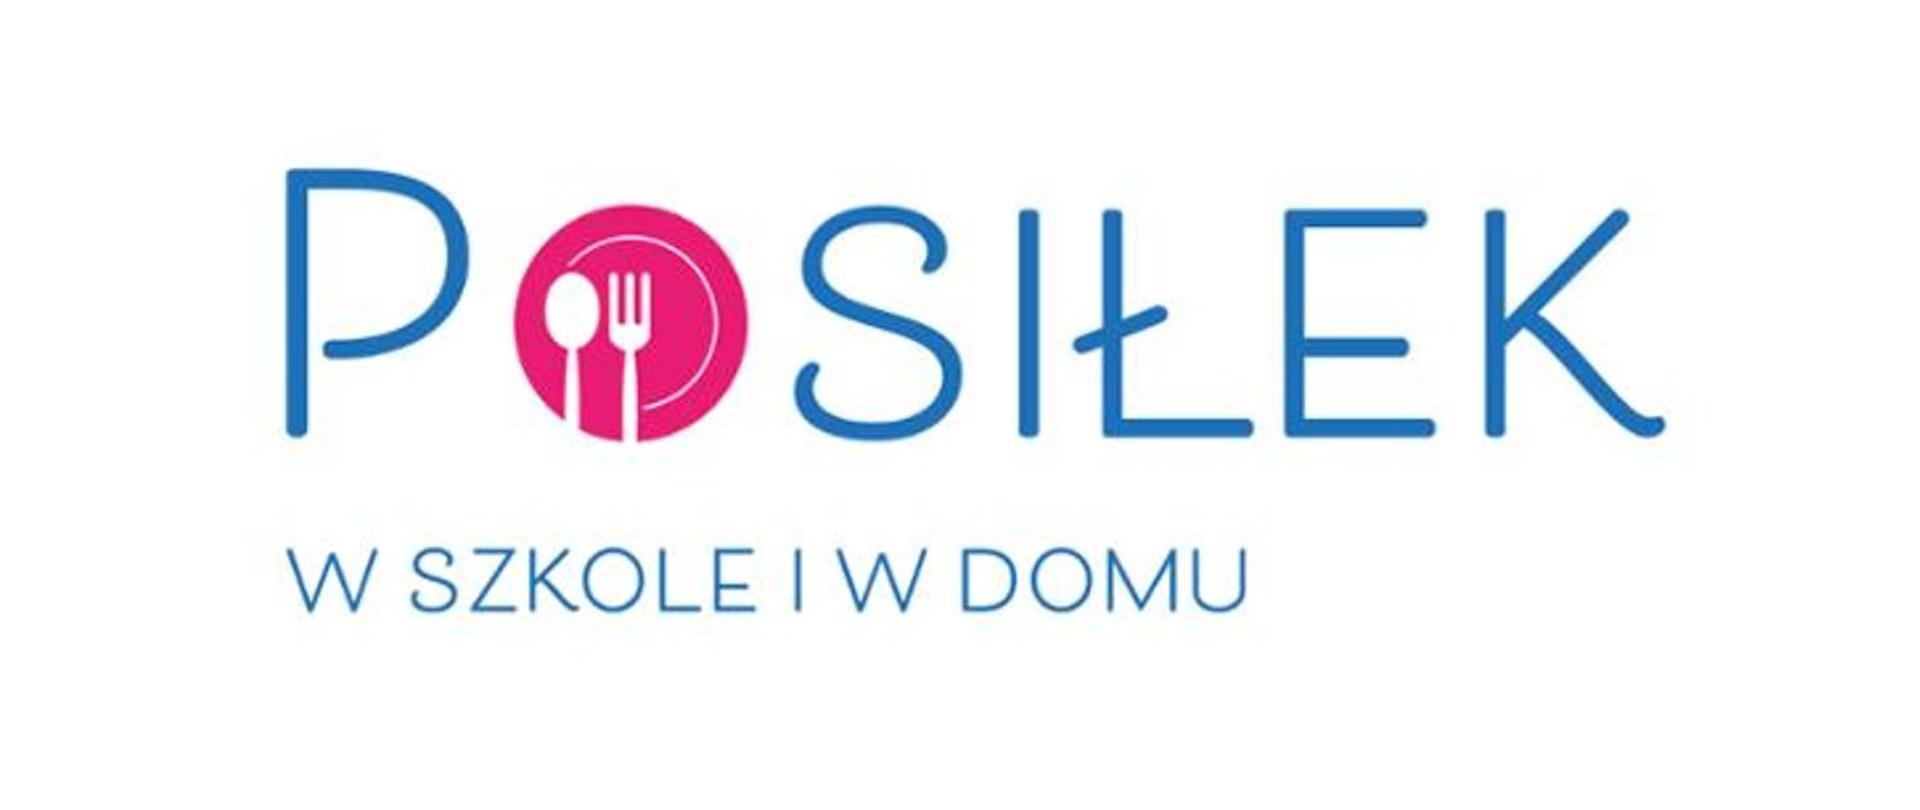 Logo programu "Posiłek w szkole i w domu". Tekst jest zapisany w niebieskim kolorze, w słowie "posiłek" literę "o" zastepuje różowo biały symbol talerza z łyżką i widelcem